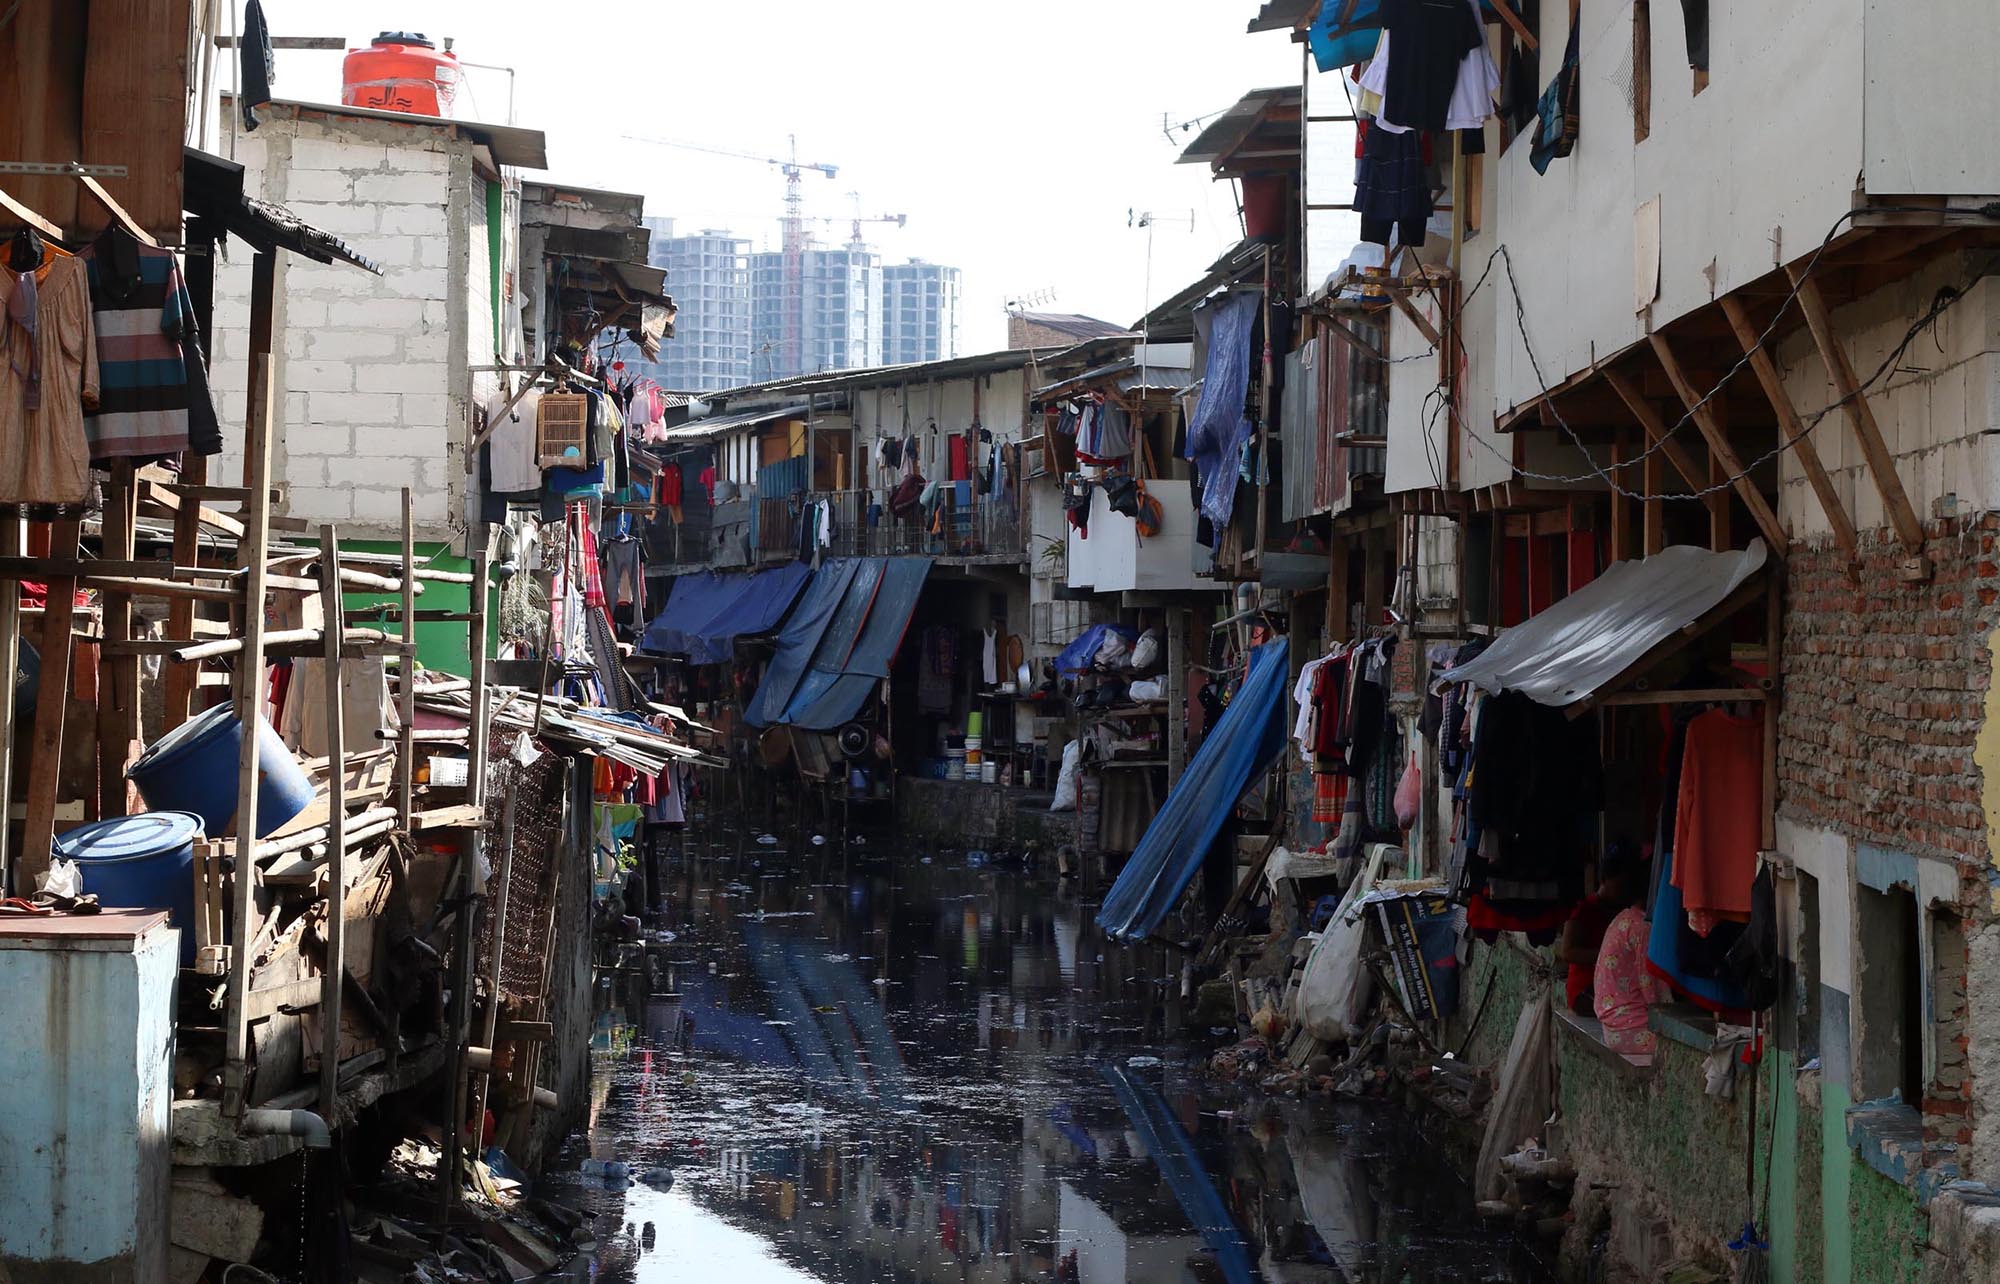 <p>Suasana pemukiman kumuh padat warga di kawasan Kebun Melati, Tanah Abang, Jakarta Pusat. Foto: Ismail Pohan/TrenAsia</p>
